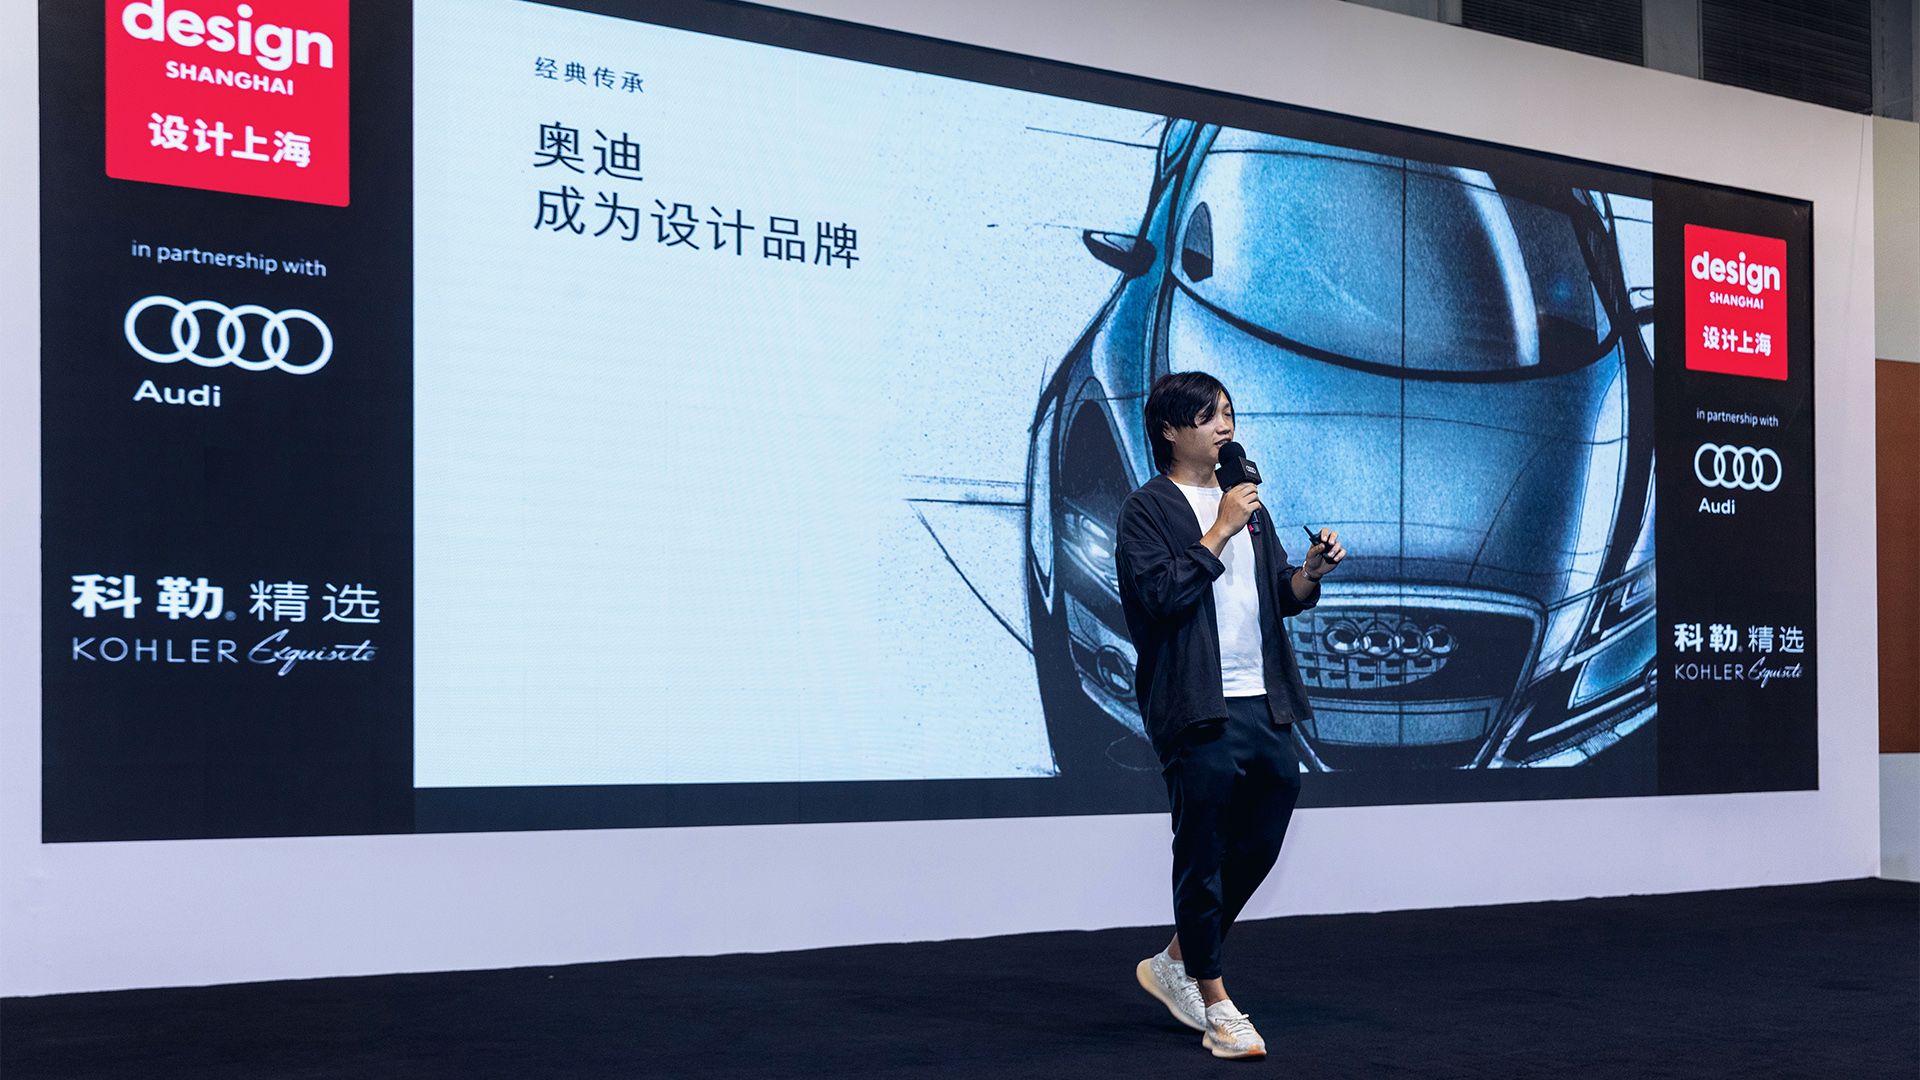 Yunzhou Wu, Koordinator Interior Design Audi China, bei seinem Vortrag.  